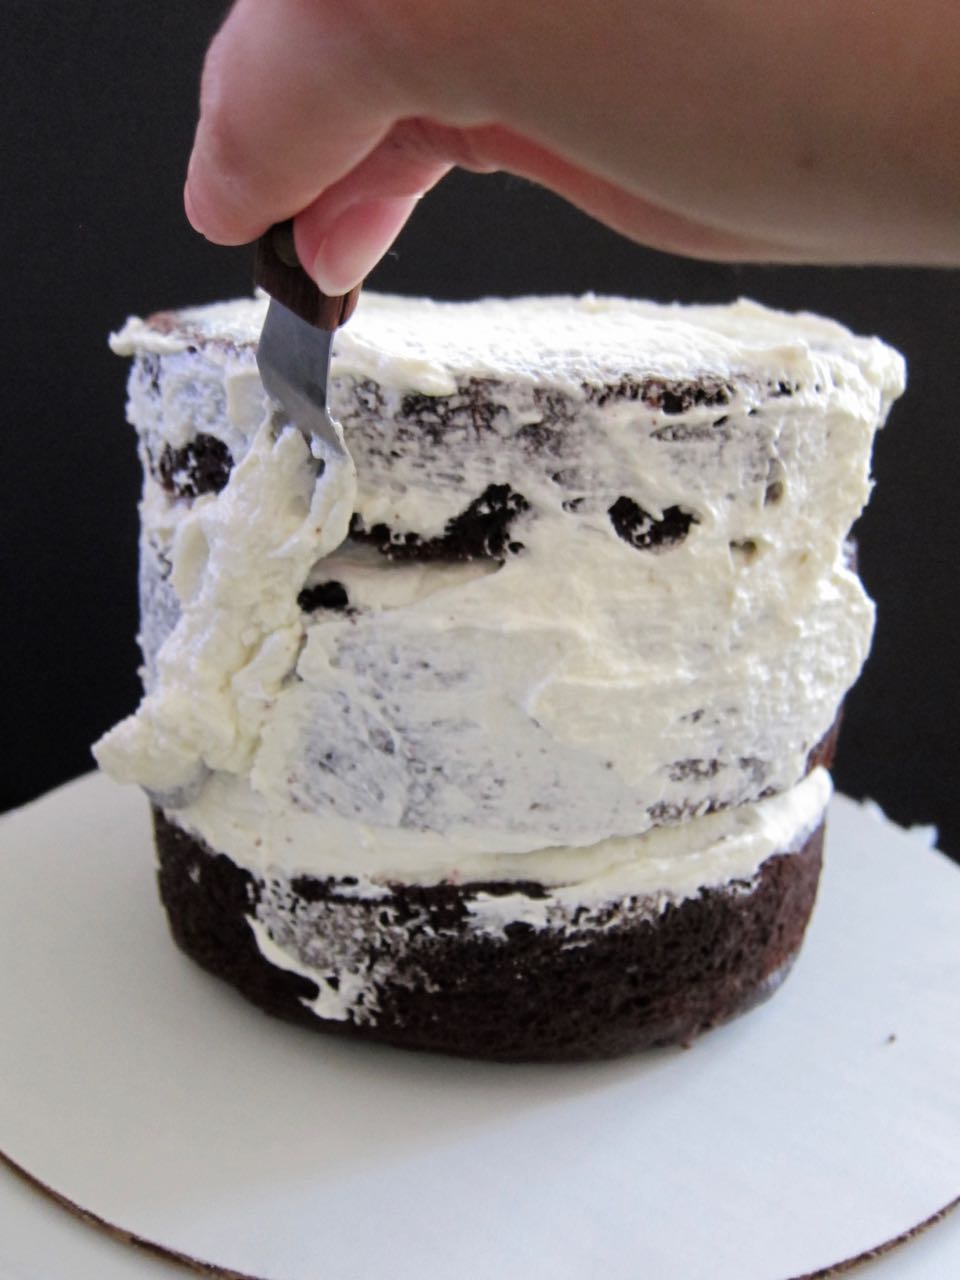 crumb coating cake.jpg